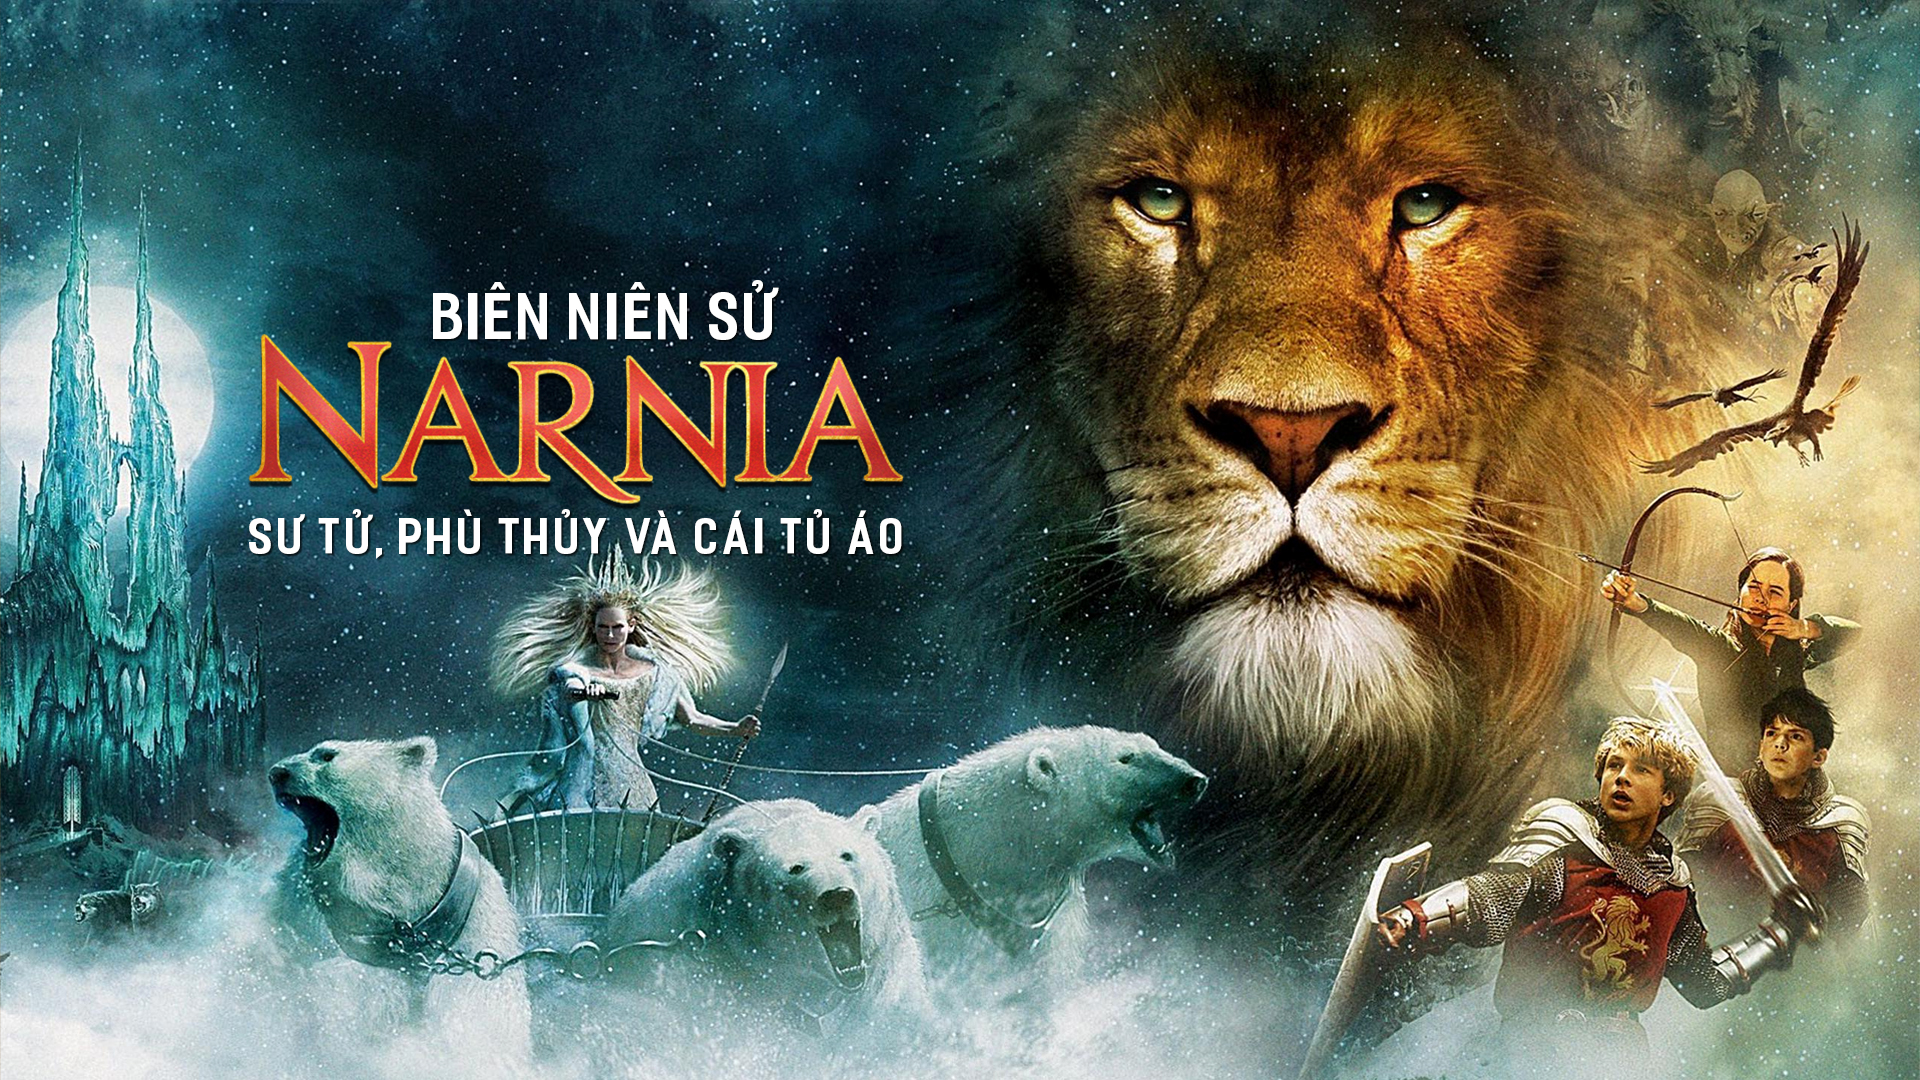 Biên Niên Sử Narnia là một chuỗi phim hứa hẹn mang lại cho bạn những giờ phút giải trí đầy thú vị. Hãy xem hình ảnh liên quan để khám phá thế giới tuyệt đẹp trong câu chuyện này.